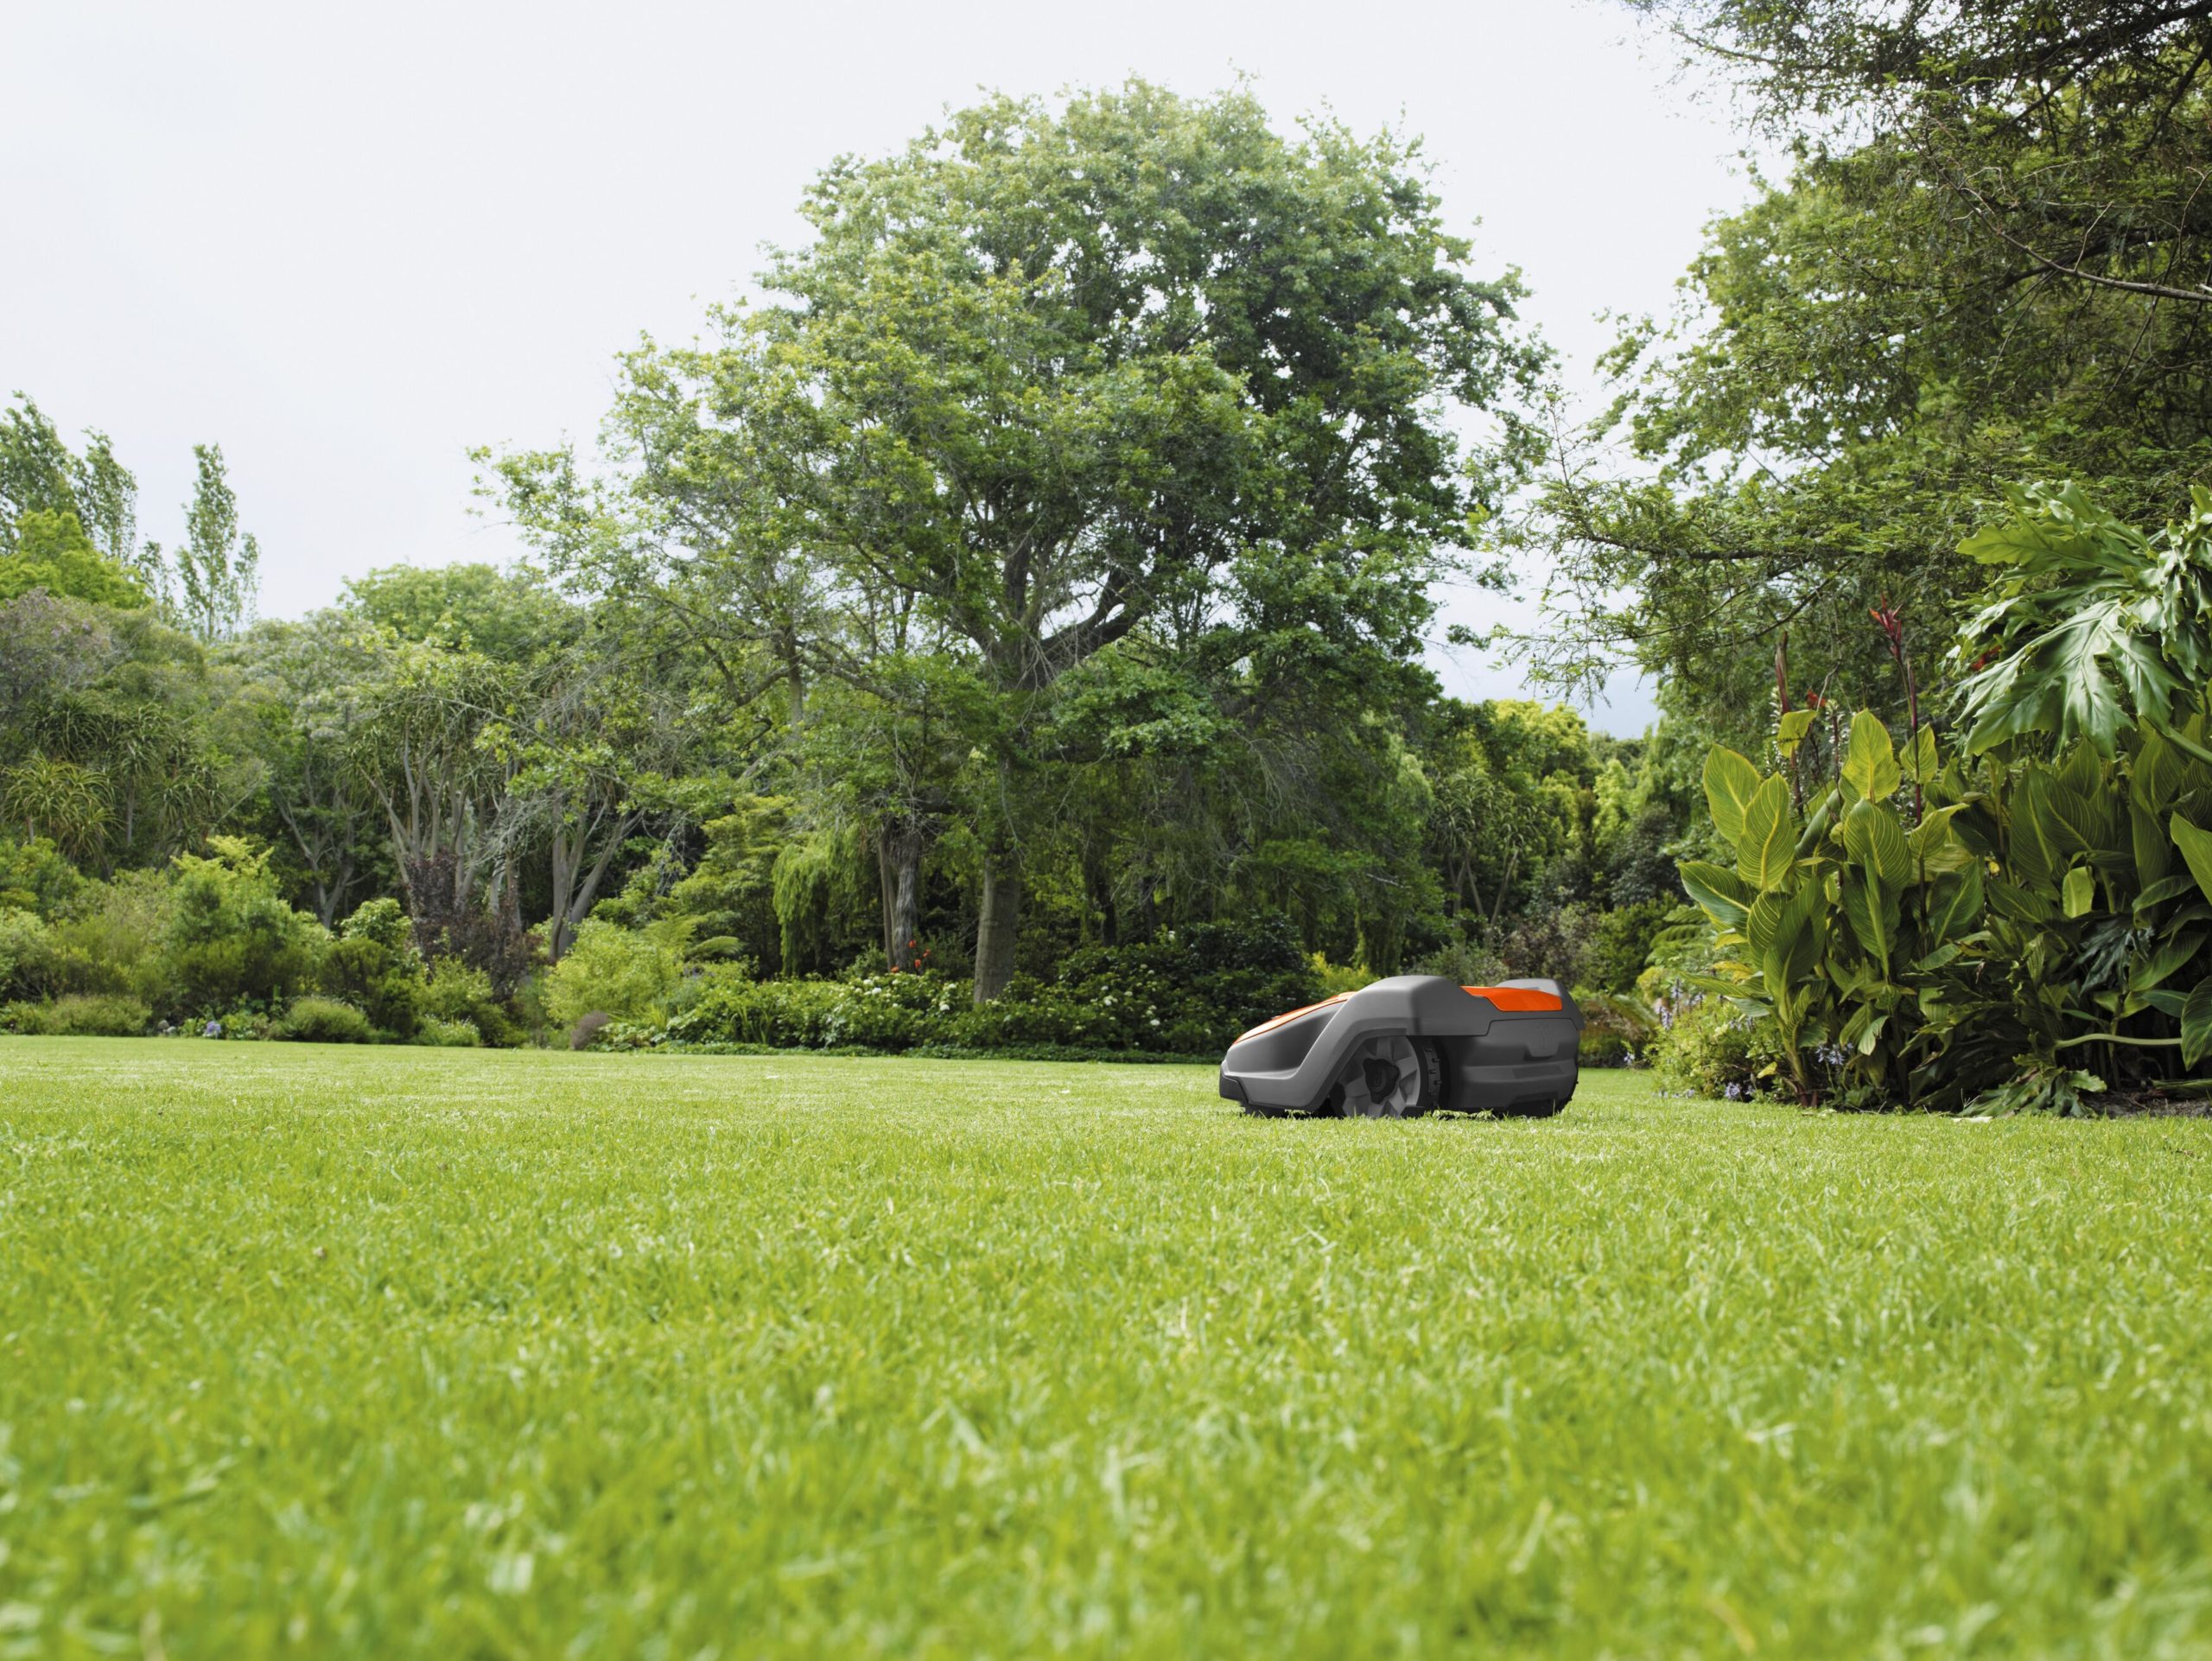  Leikkuumenetelmä toimii siten, että terät leikkaavat ruohon hellävaraisesti monelta suunnalta, ja tuloksena on kaunis ja mattomainen nurmikko